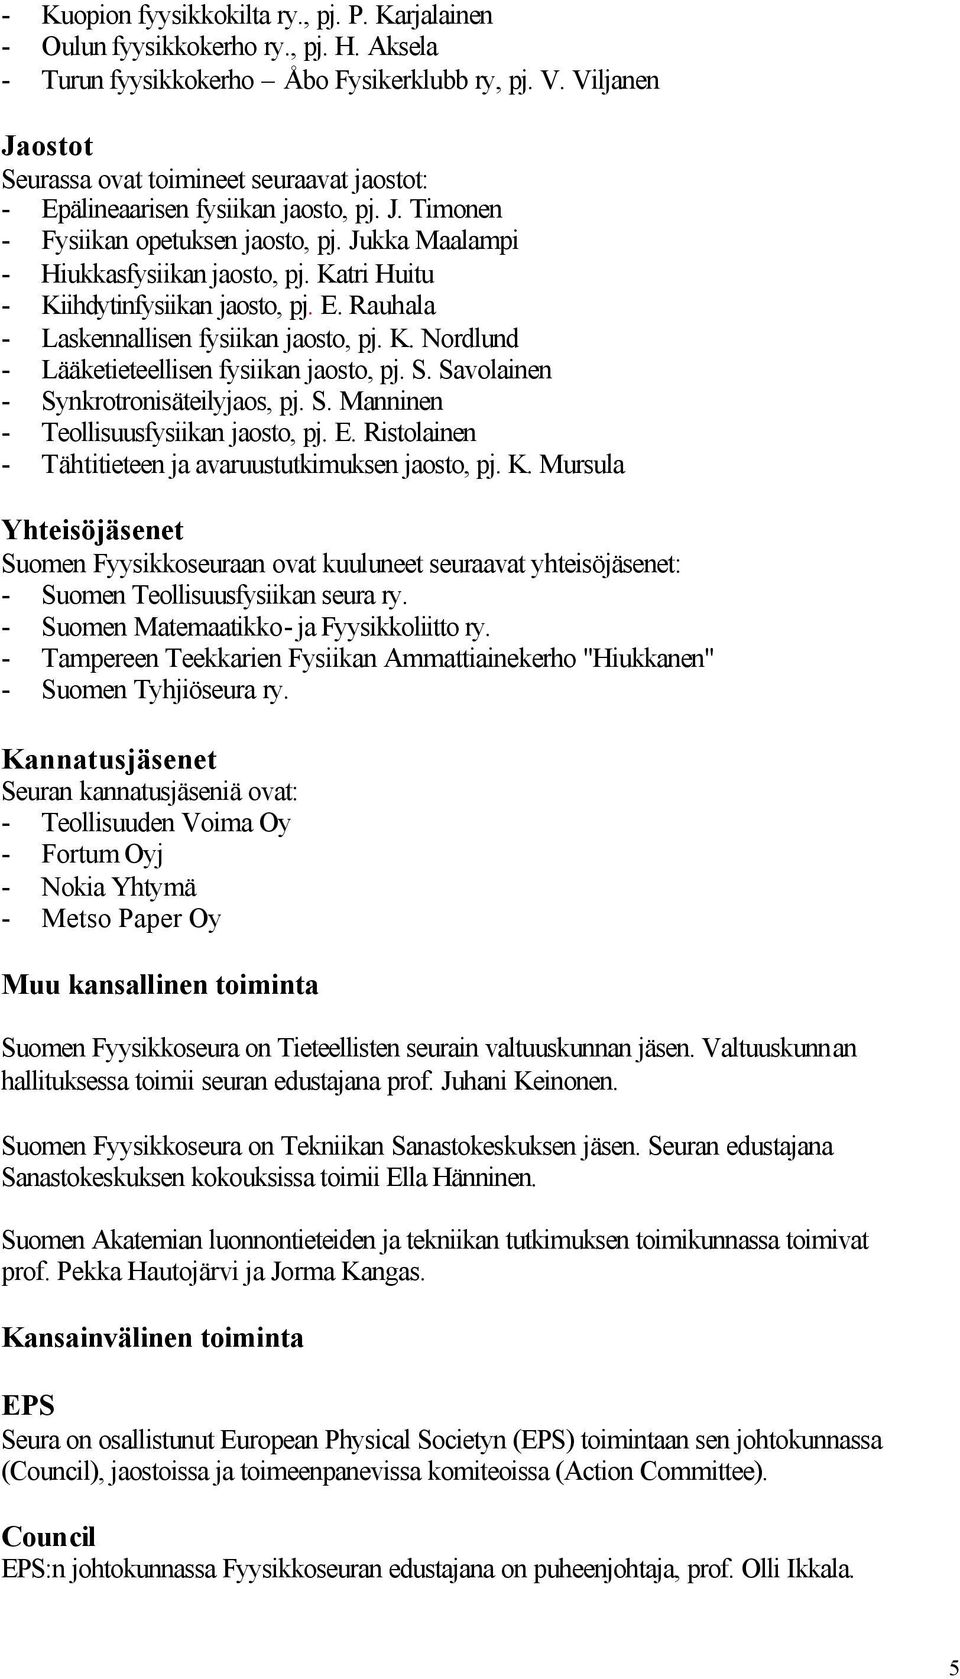 Katri Huitu - Kiihdytinfysiikan jaosto, pj. E. Rauhala - Laskennallisen fysiikan jaosto, pj. K. Nordlund - Lääketieteellisen fysiikan jaosto, pj. S. Savolainen - Synkrotronisäteilyjaos, pj. S. Manninen - Teollisuusfysiikan jaosto, pj.